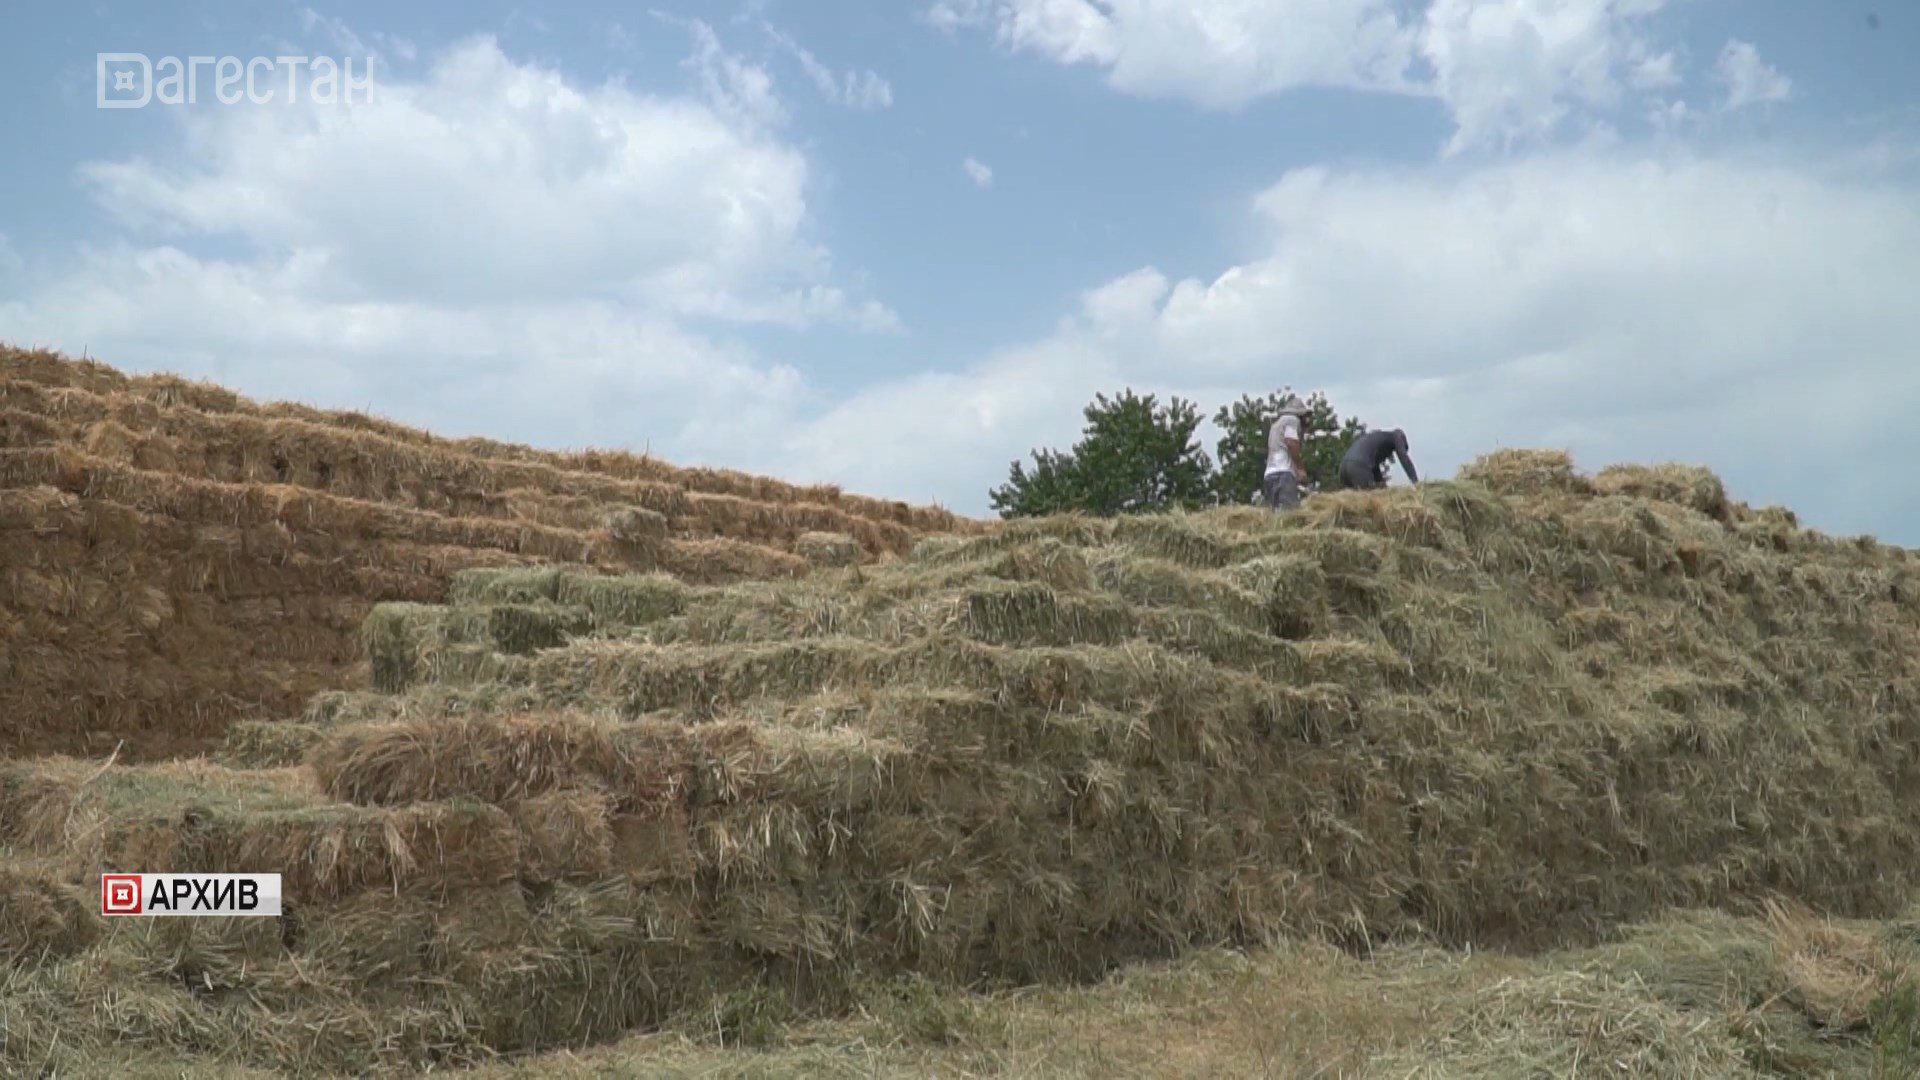 Дагестанские аграрии приступили к заготовке кормов на зиму